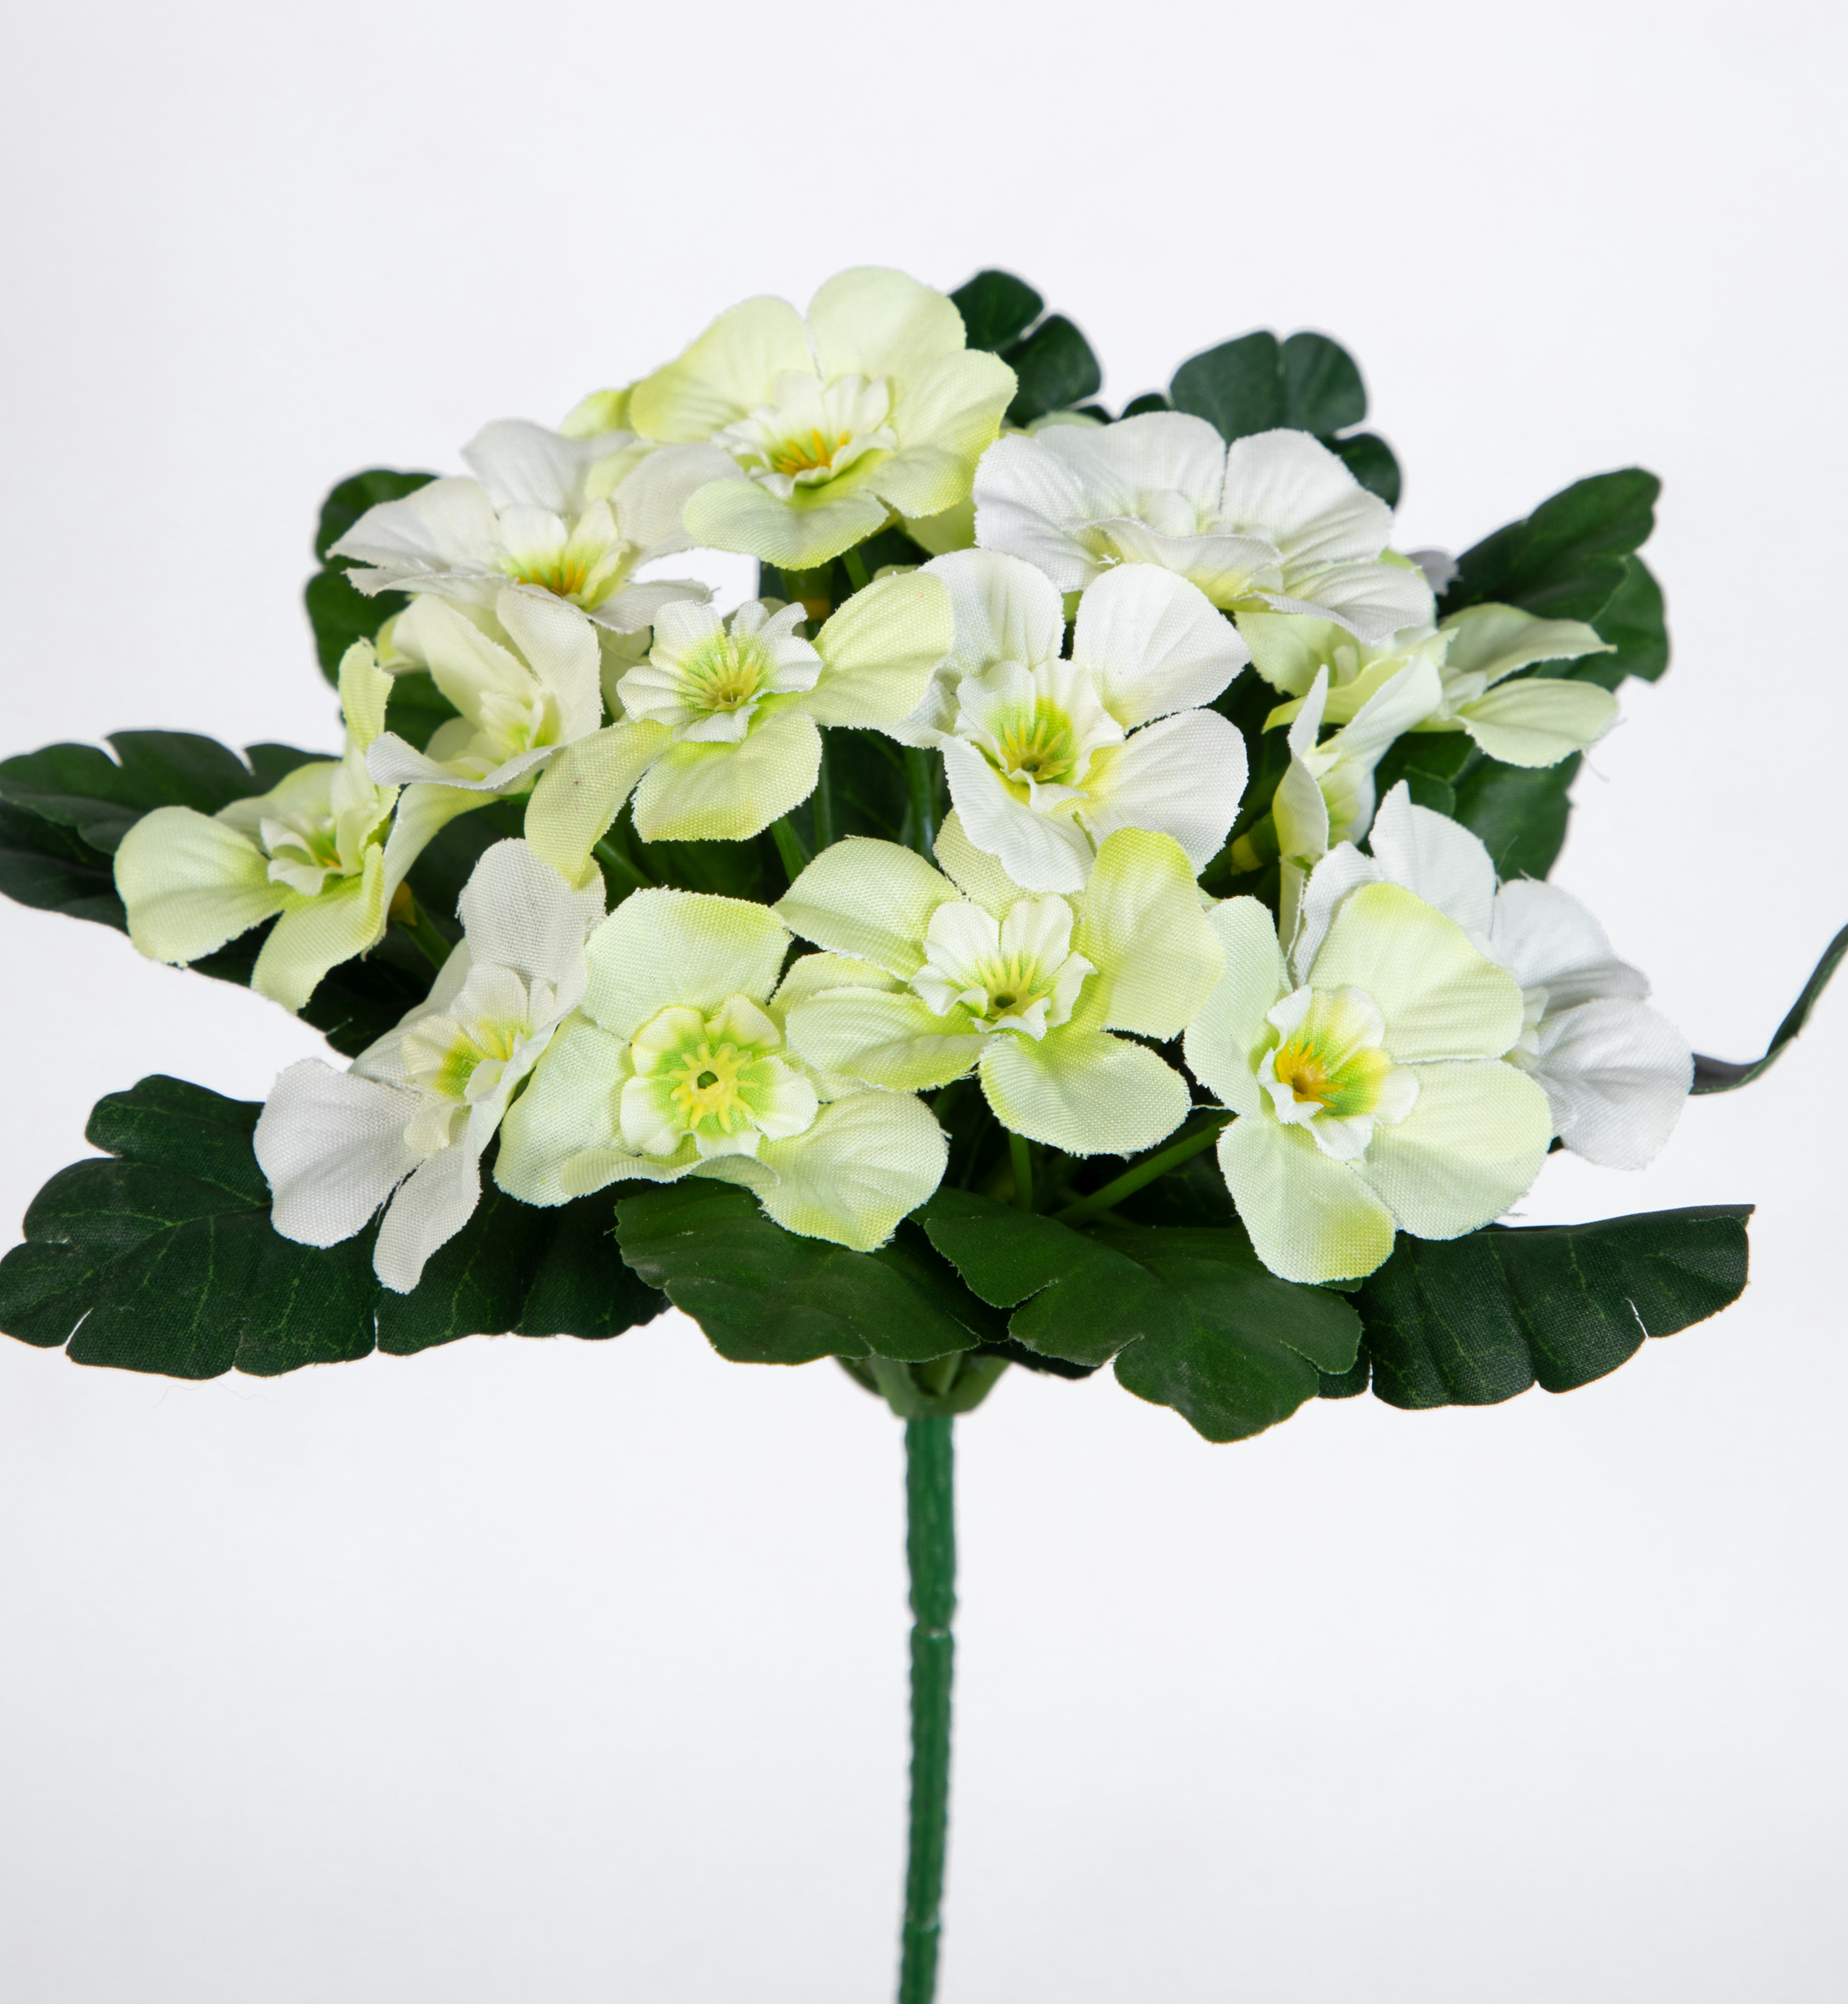 Primelbusch 24x22cm weiß mit 20 Blüten PM Kunstblumen Kunstpflanzen künstliche Primel Schlüsselblume